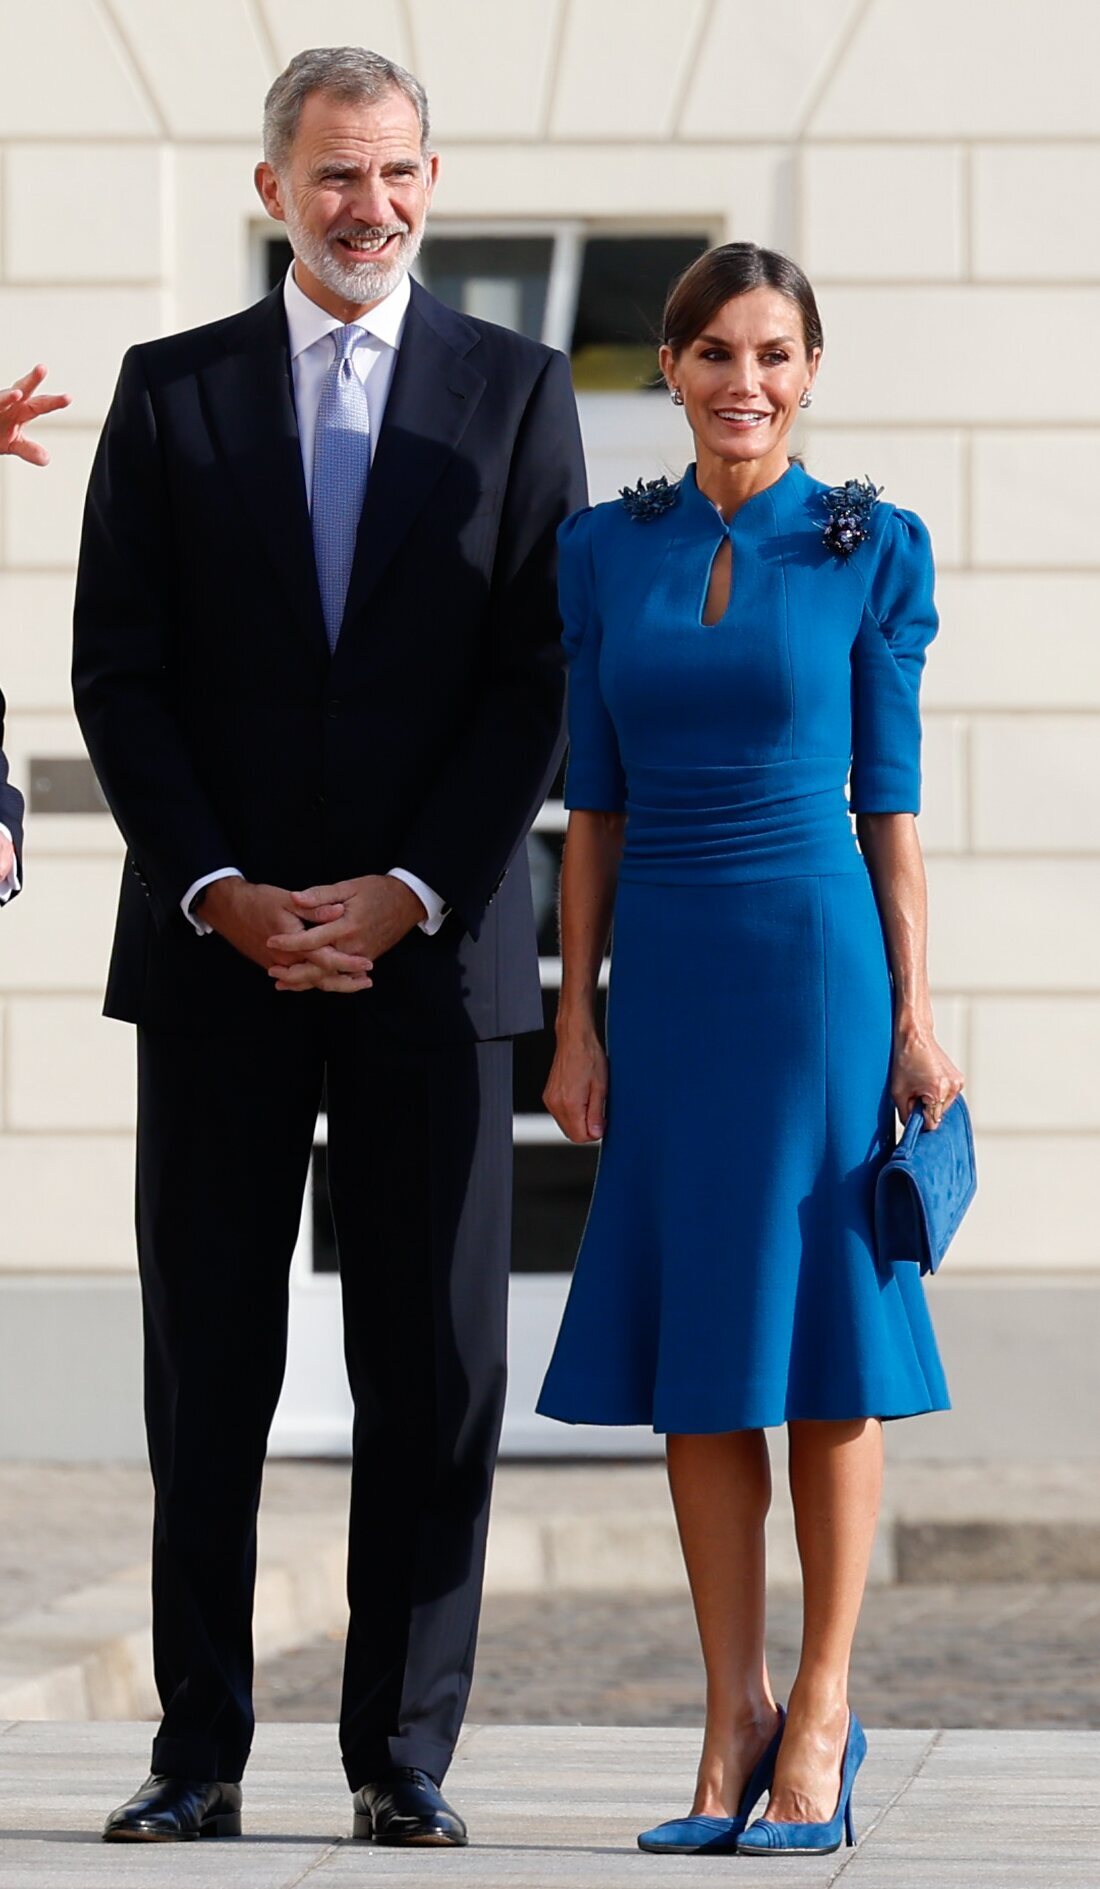 Los Reyes Felipe y Letizia en la ceremonia de bienvenida en su visita de Estado a Alemania | Foto: Bekia.es / Gtres